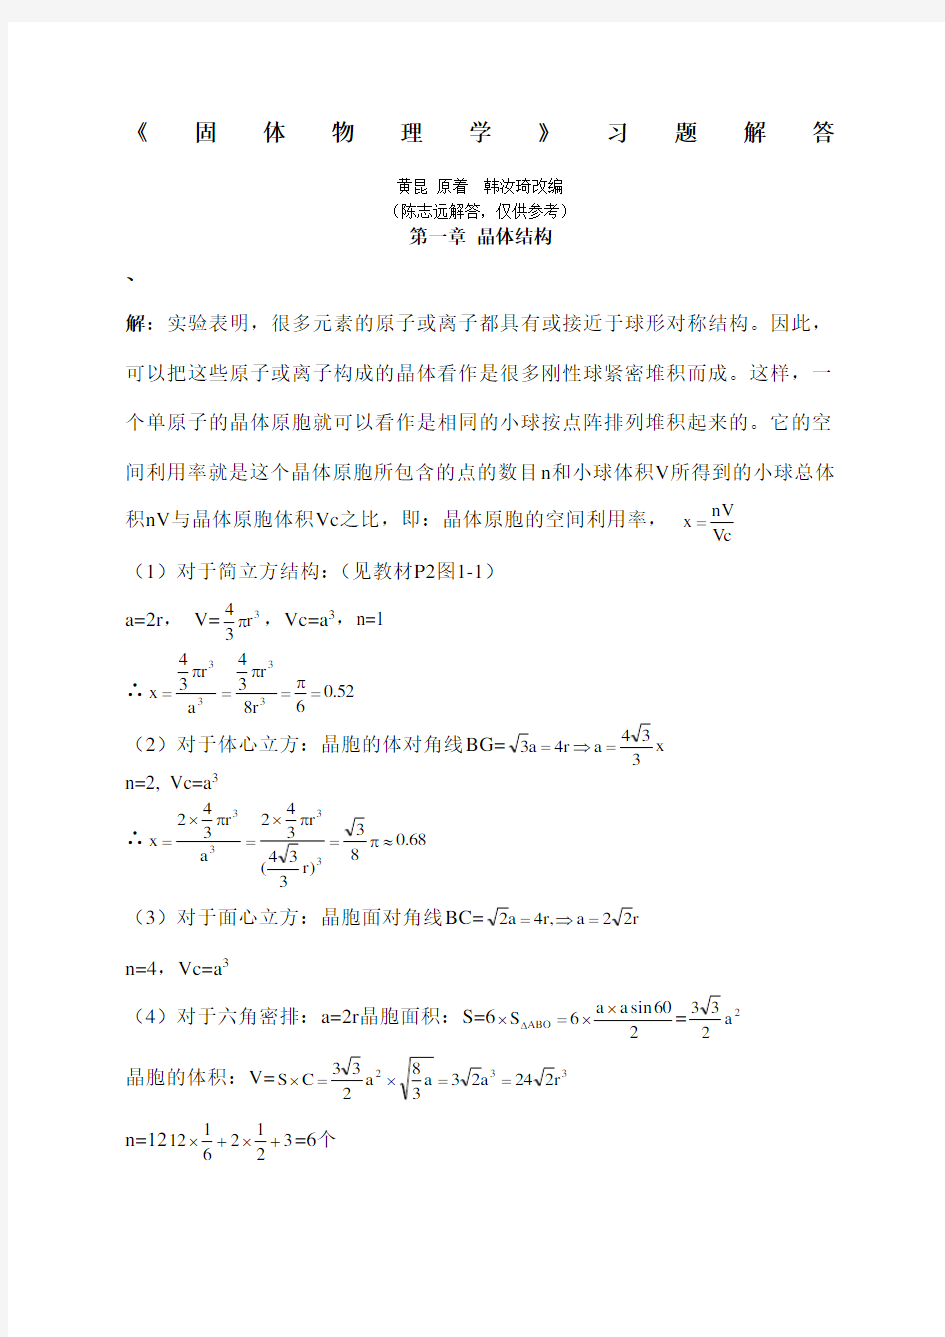 黄昆版固体物理学课后答案解析答案 (2)